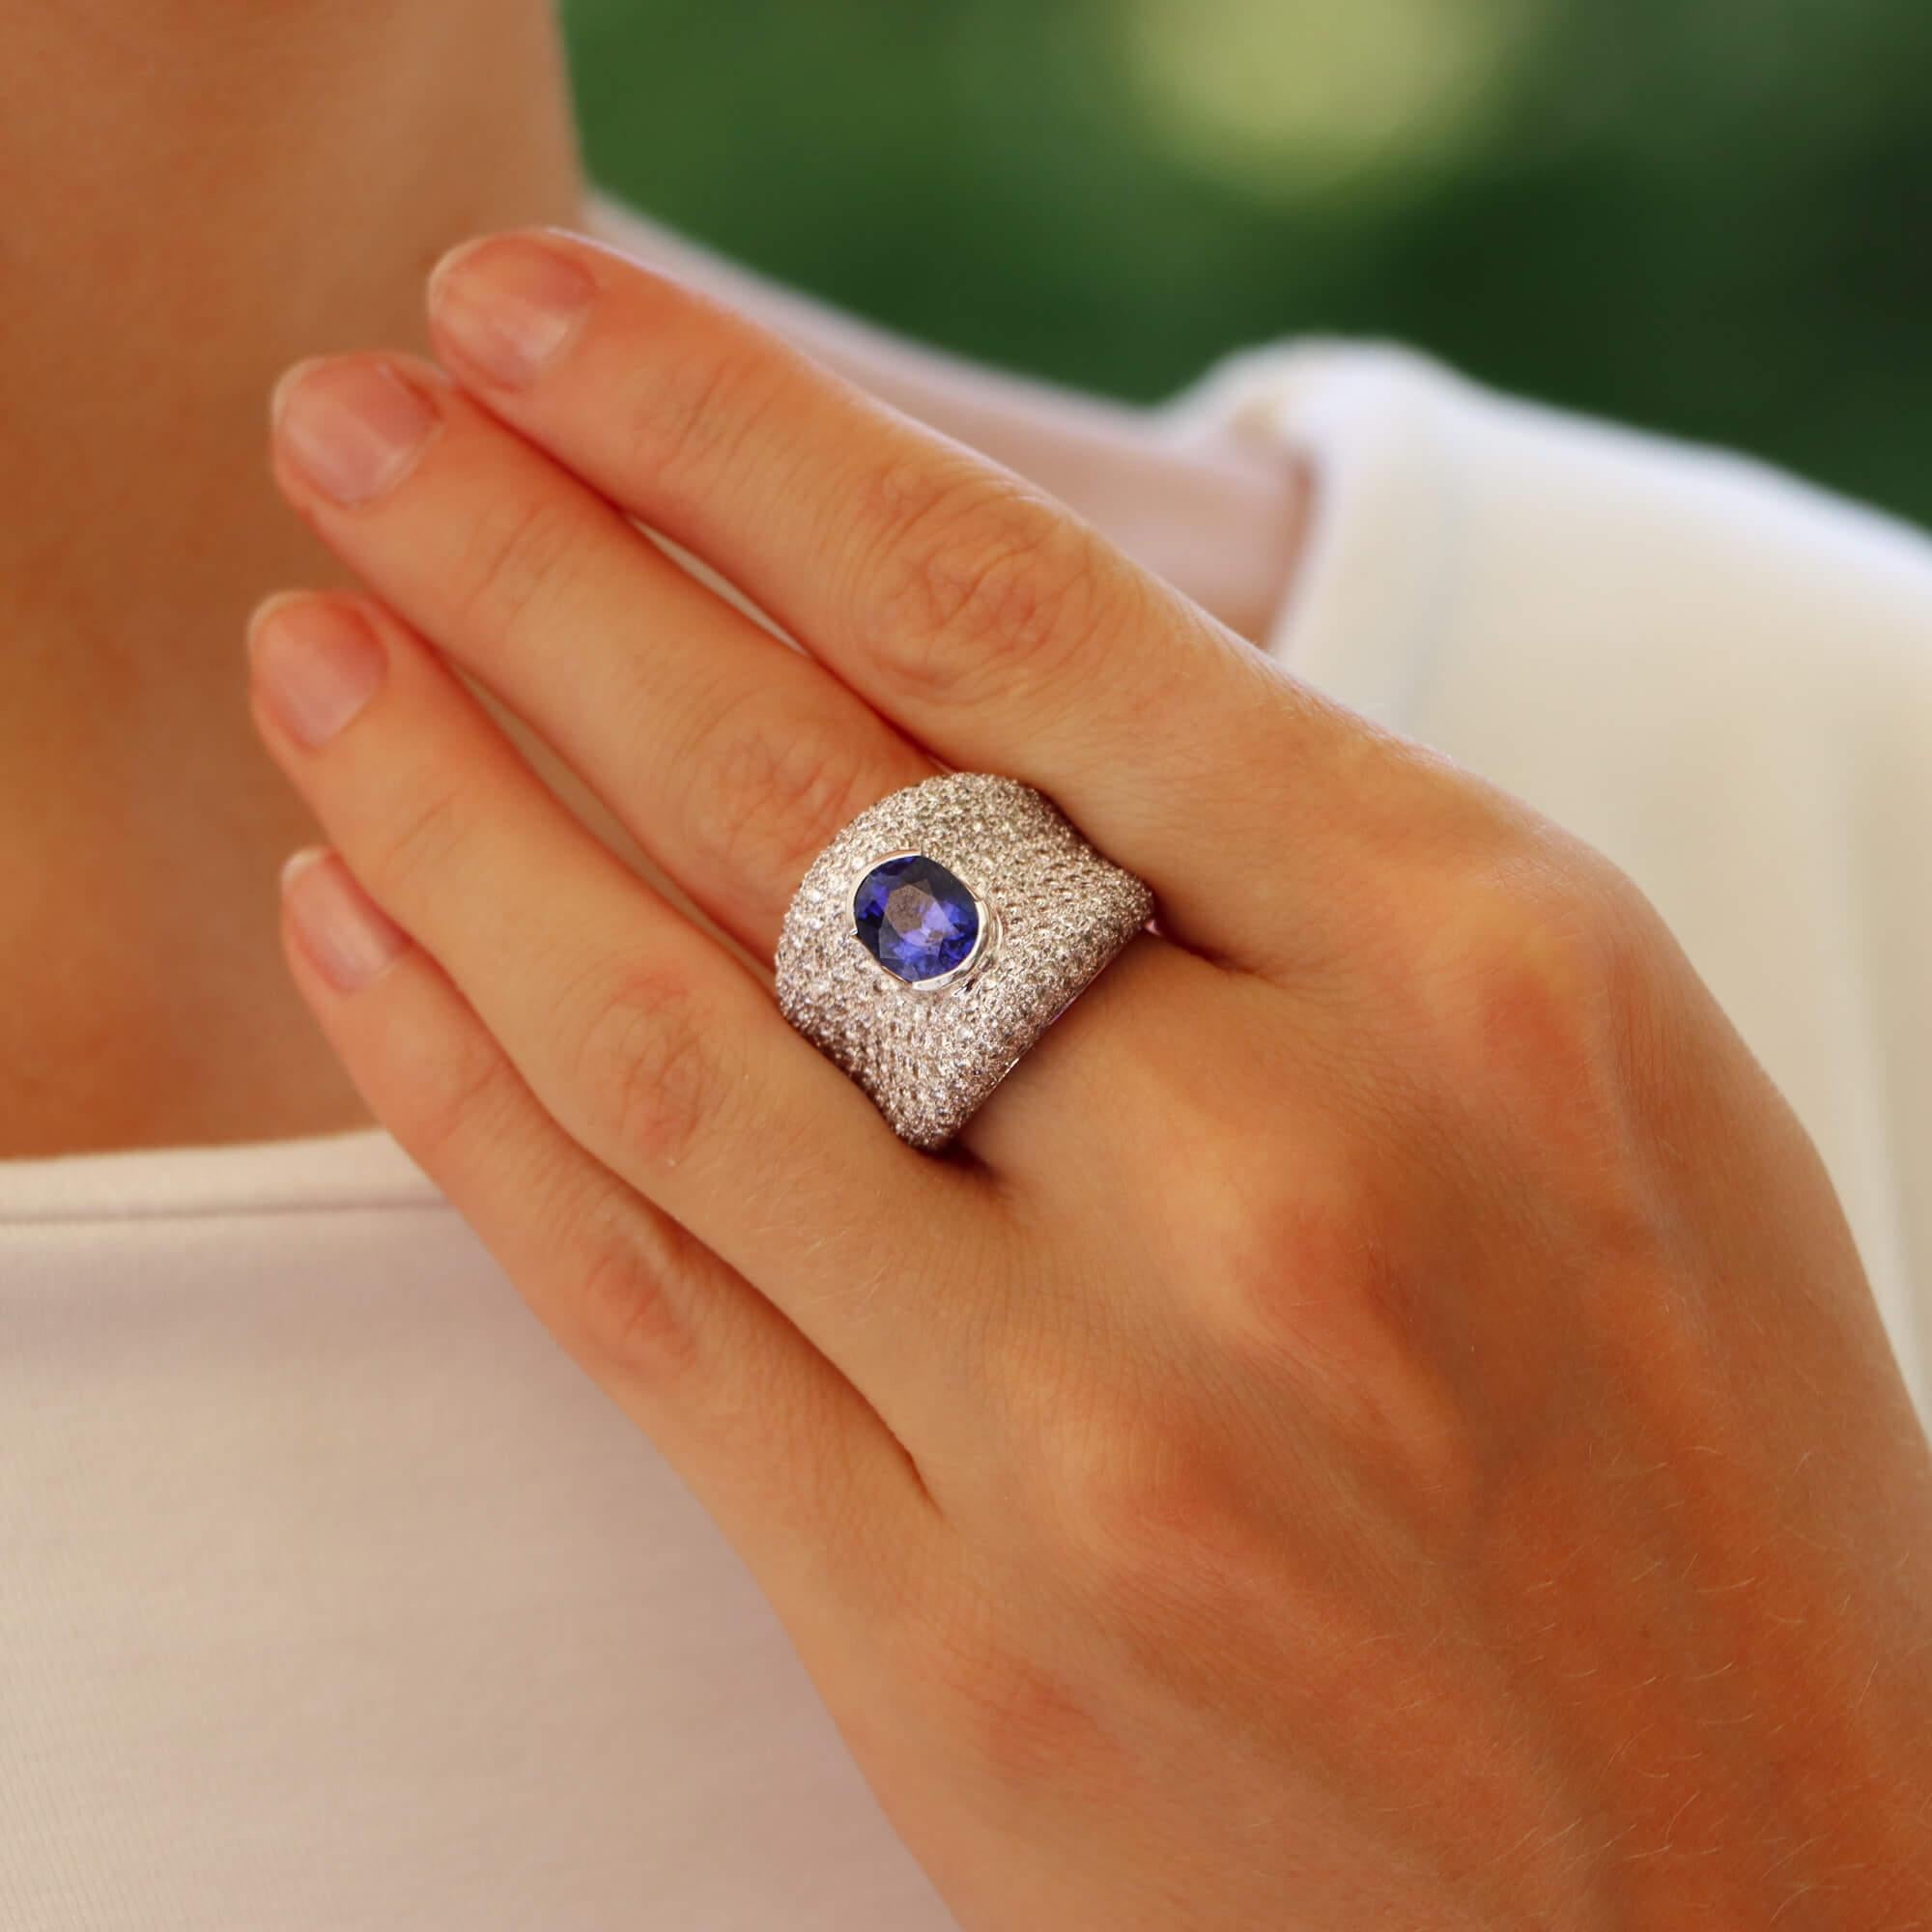  Eine schöne Vintage blauen Saphir und Diamant Bombe Kleid Ring in 18k Weißgold gesetzt.

Dieses einzigartige Stück ist in einem Bomben-Design komponiert und in der Mitte mit einem lebhaften blauen Saphir im Ovalschliff besetzt. Der Saphir ist